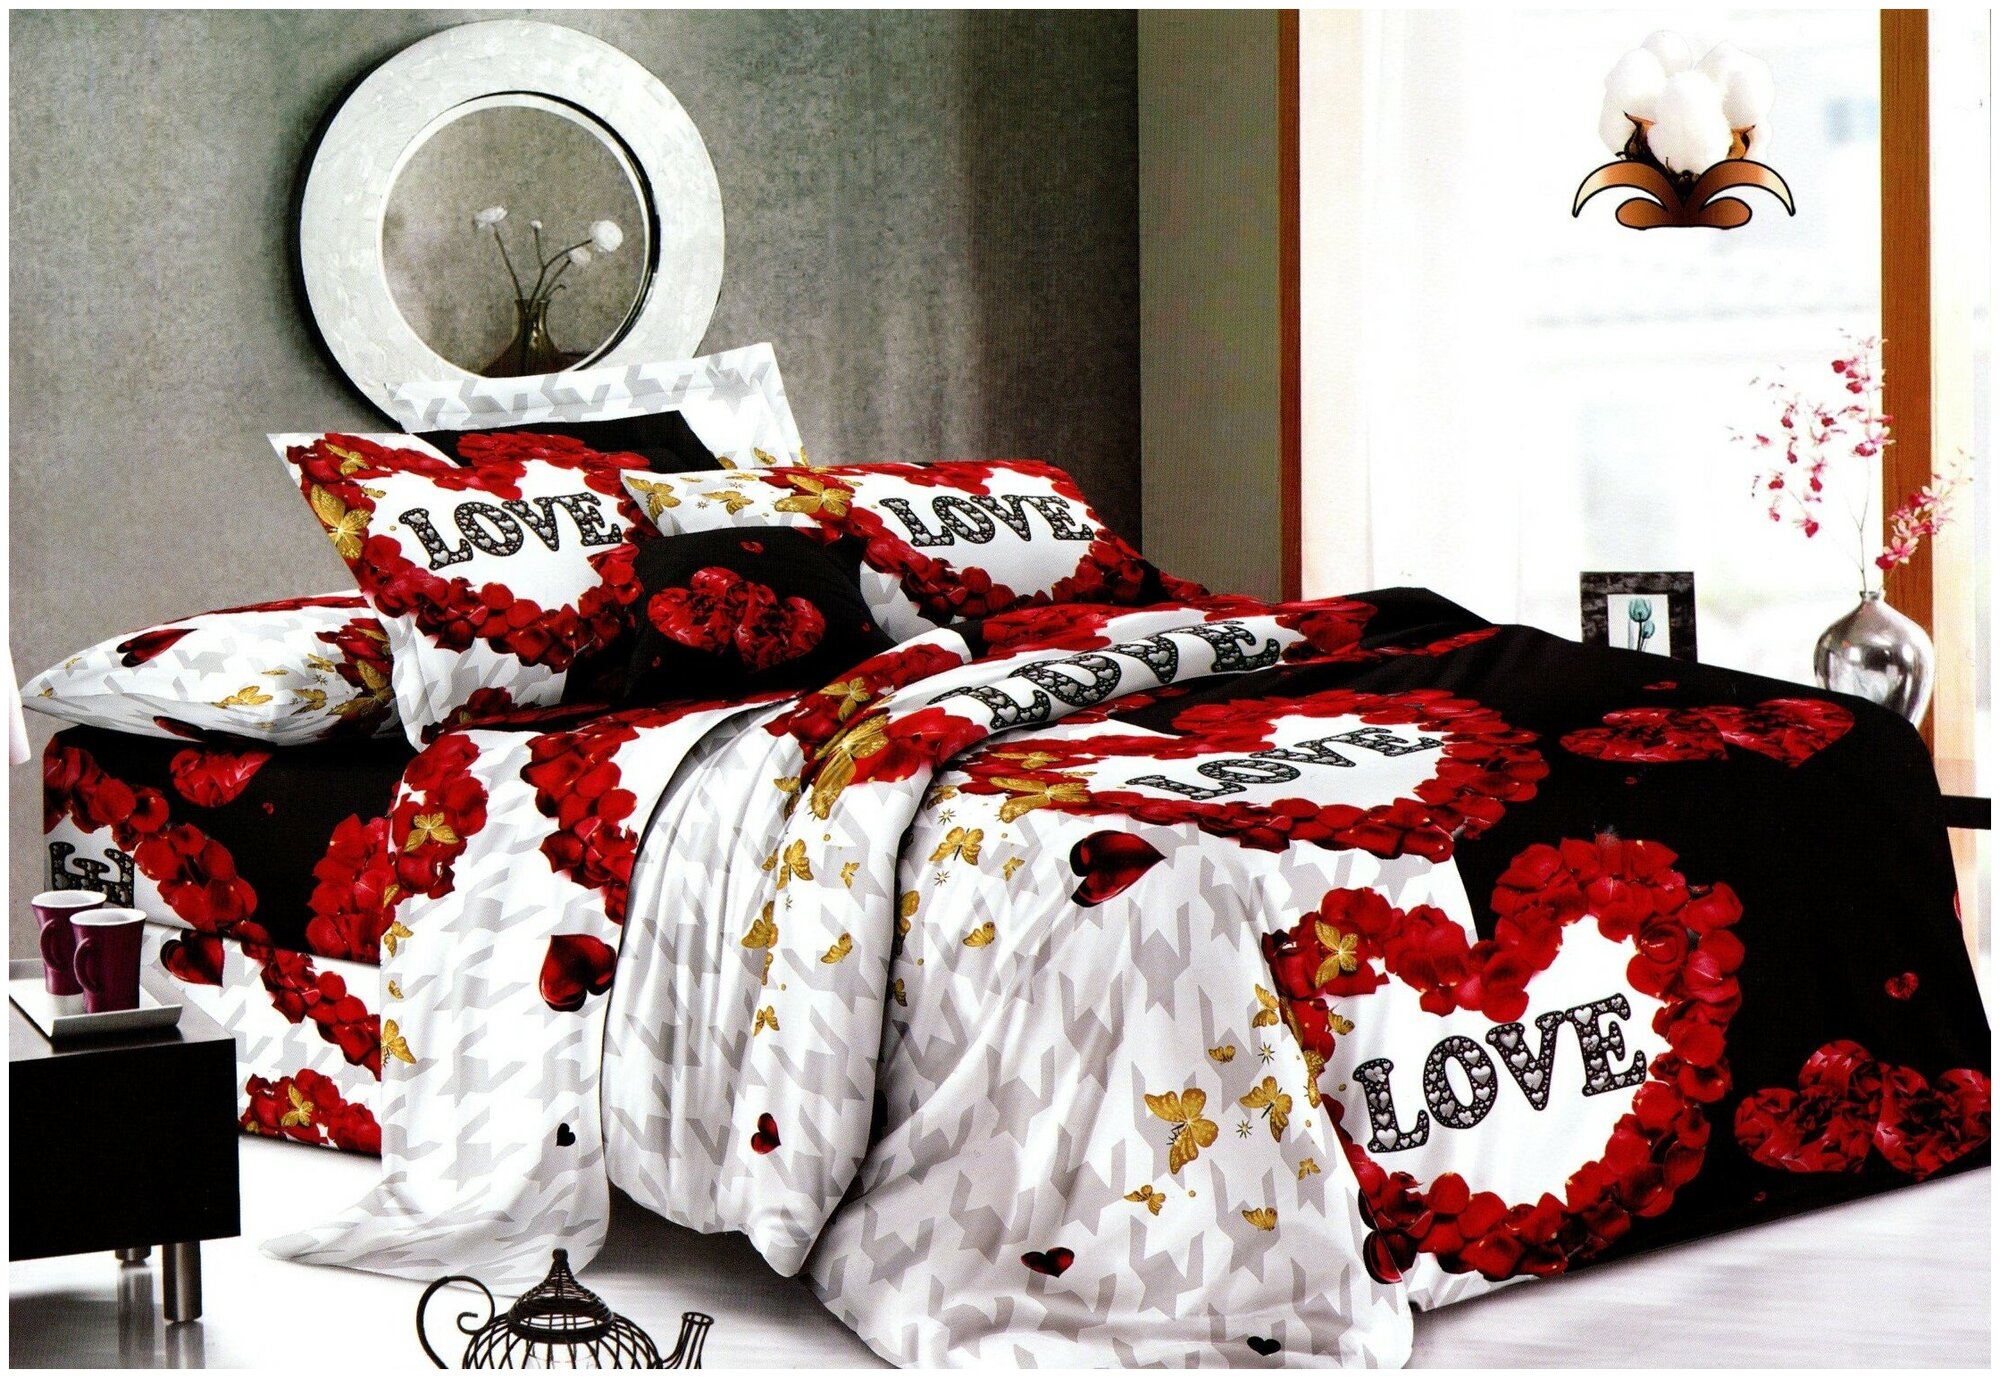 Комплект постельного белья, Cheery home, полисатин, 1,5 спальный с 2 наволочками 70*70, Лепестки роз.